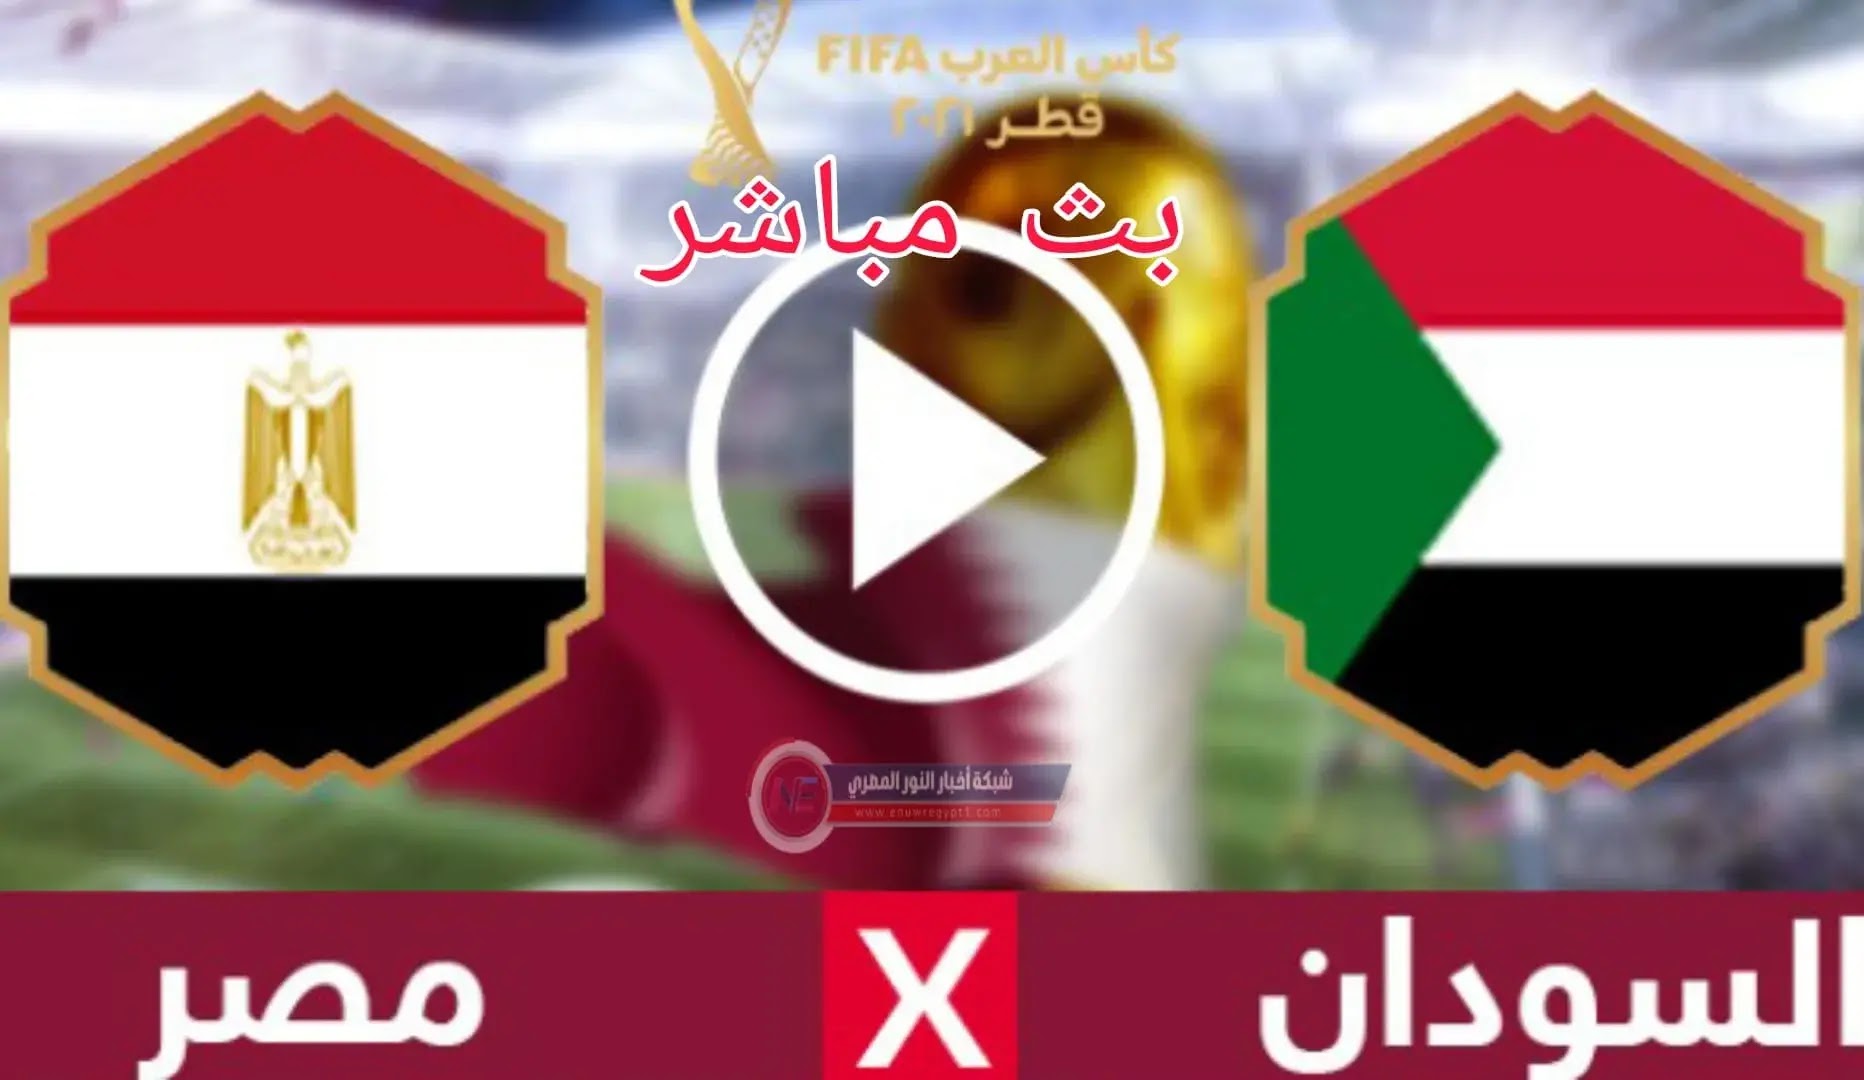 الان يلا شوت بث مباشر يوتيوب .. مشاهدة مباراة مصر و السودان بث مباشر اليوم 04-12-2021 في كأس العرب بجودة عالية